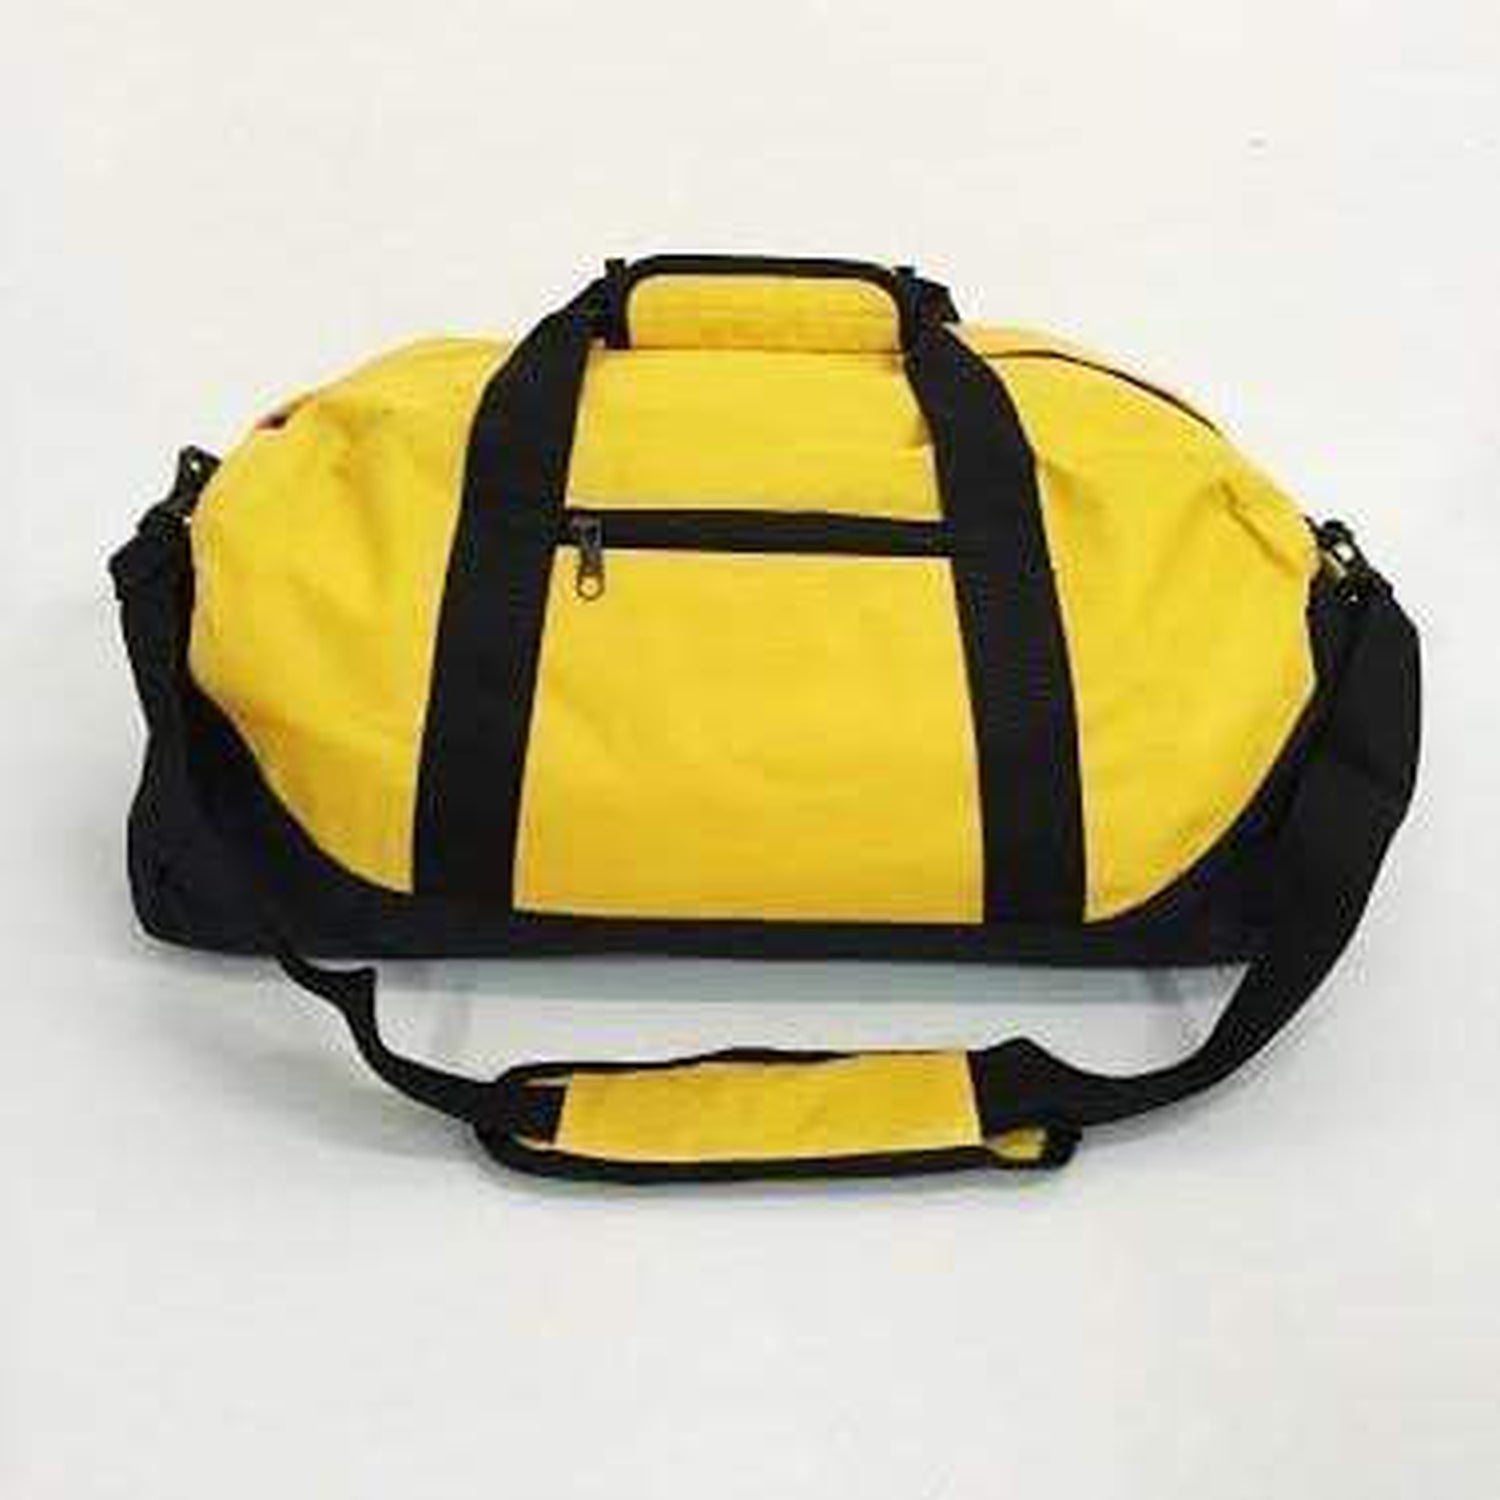 Wholesale Duffle Bags, Medium Travel Duffle Bags in Bulk - BagzDepot – BagzDepot™